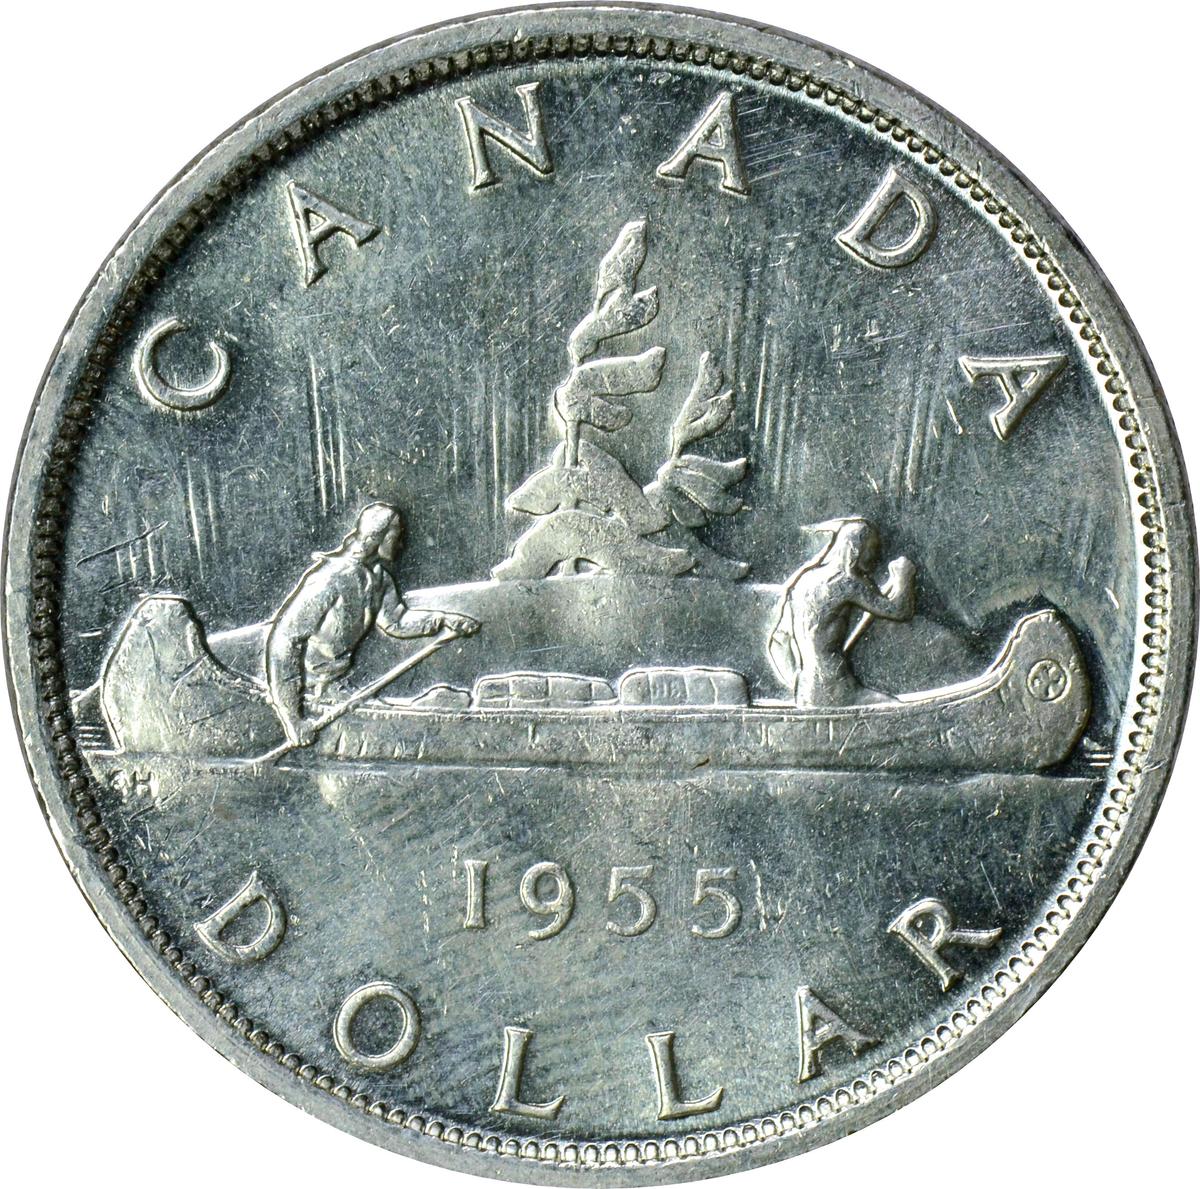 CANADA - 1955 SILVER DOLLAR